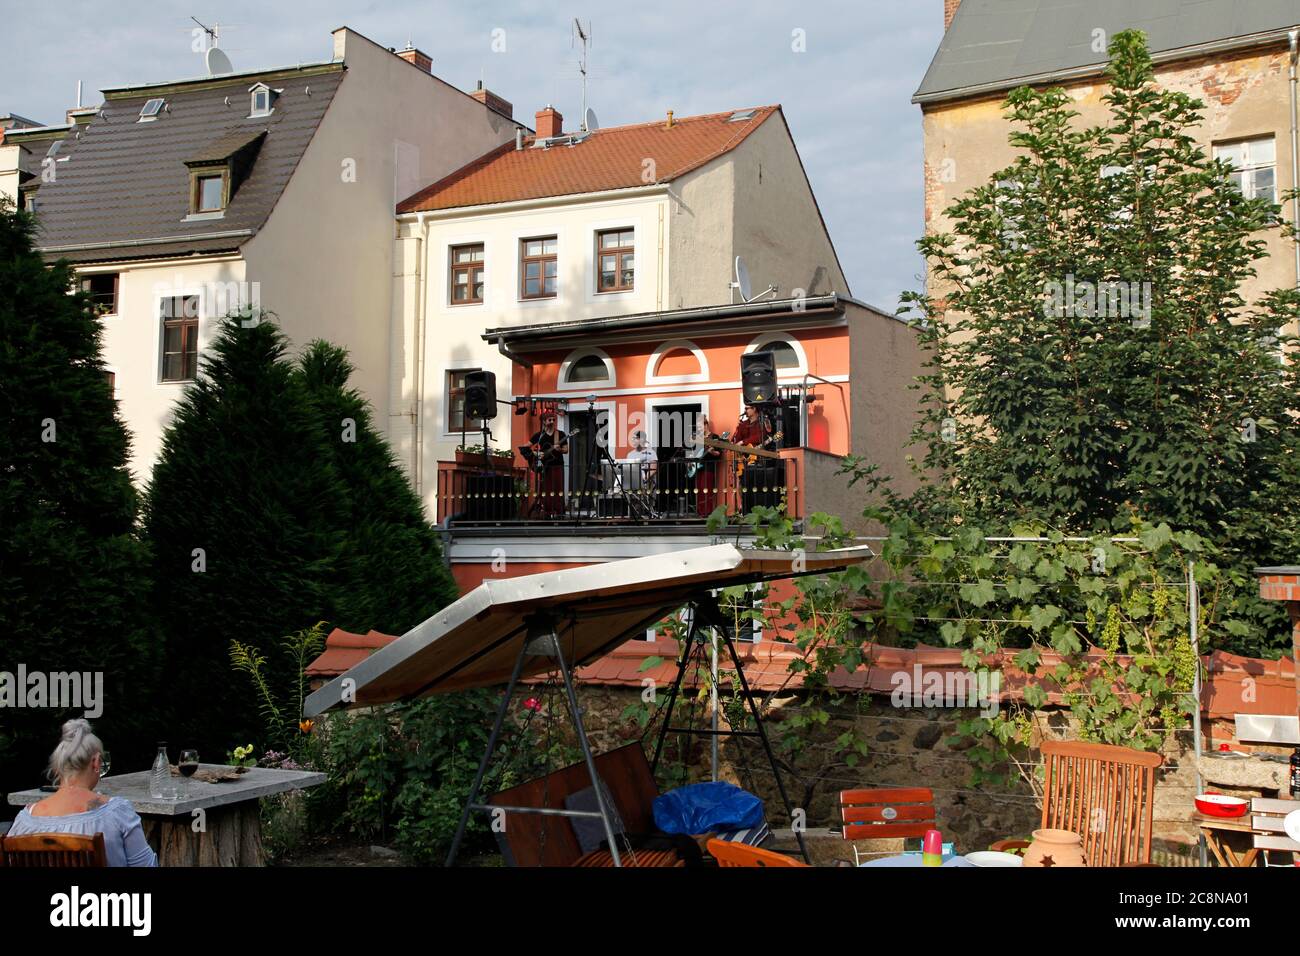 Corona Balkonkonzert mit der Band „Colour the Sky", das erste seiner Art in Görlitz, Fleischerstraße 7. Der Innenhof ist mit ca. 70 angrenzenden Mietp Foto Stock